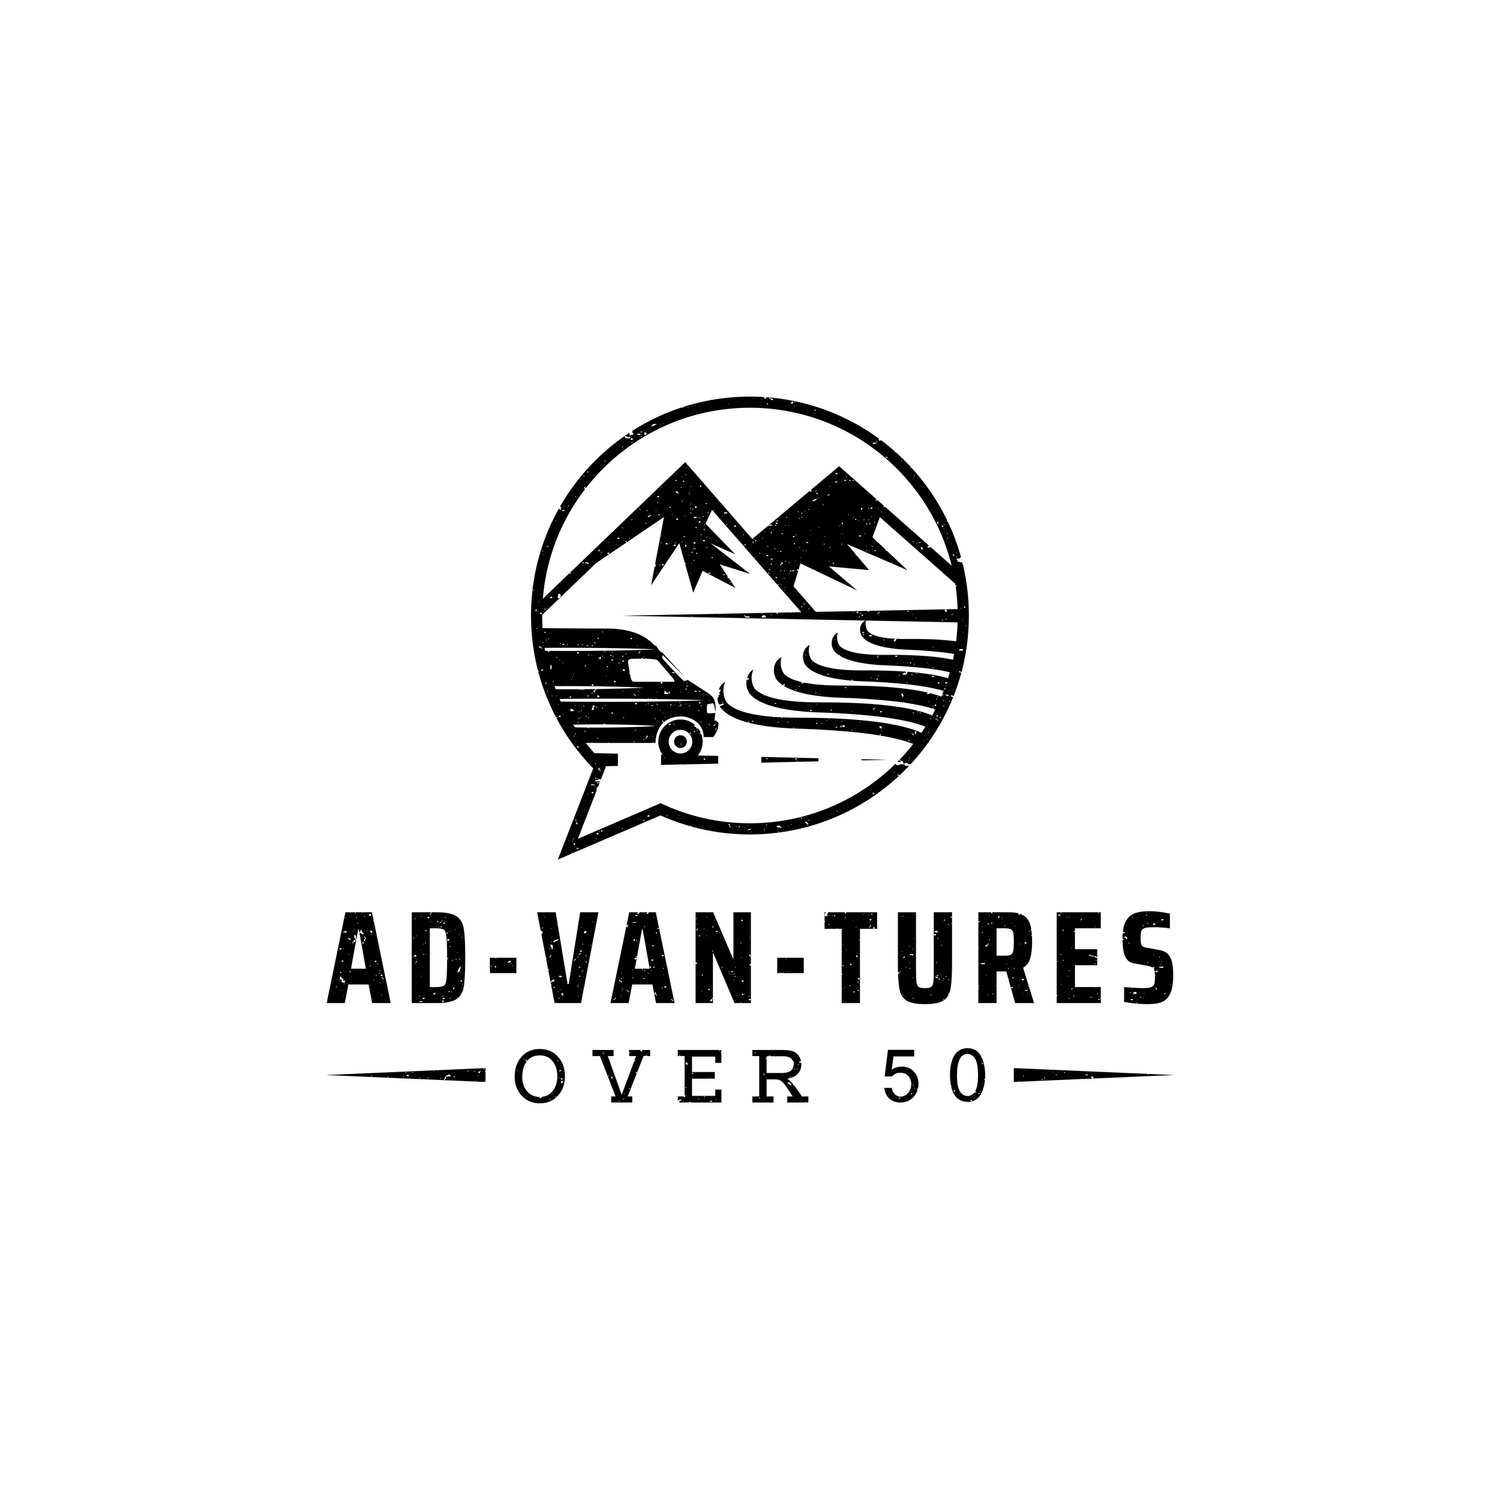 Ad-Van-Tures Over 50